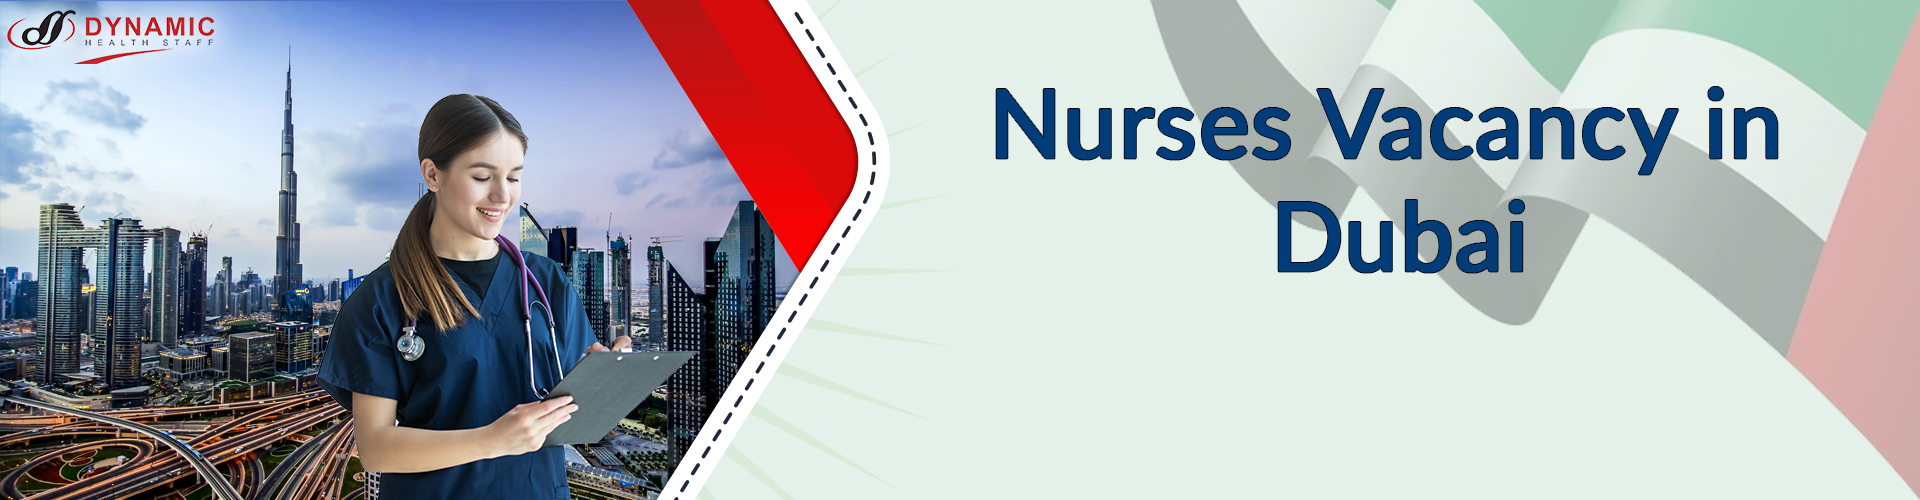 Nurses Vacancy in Dubai